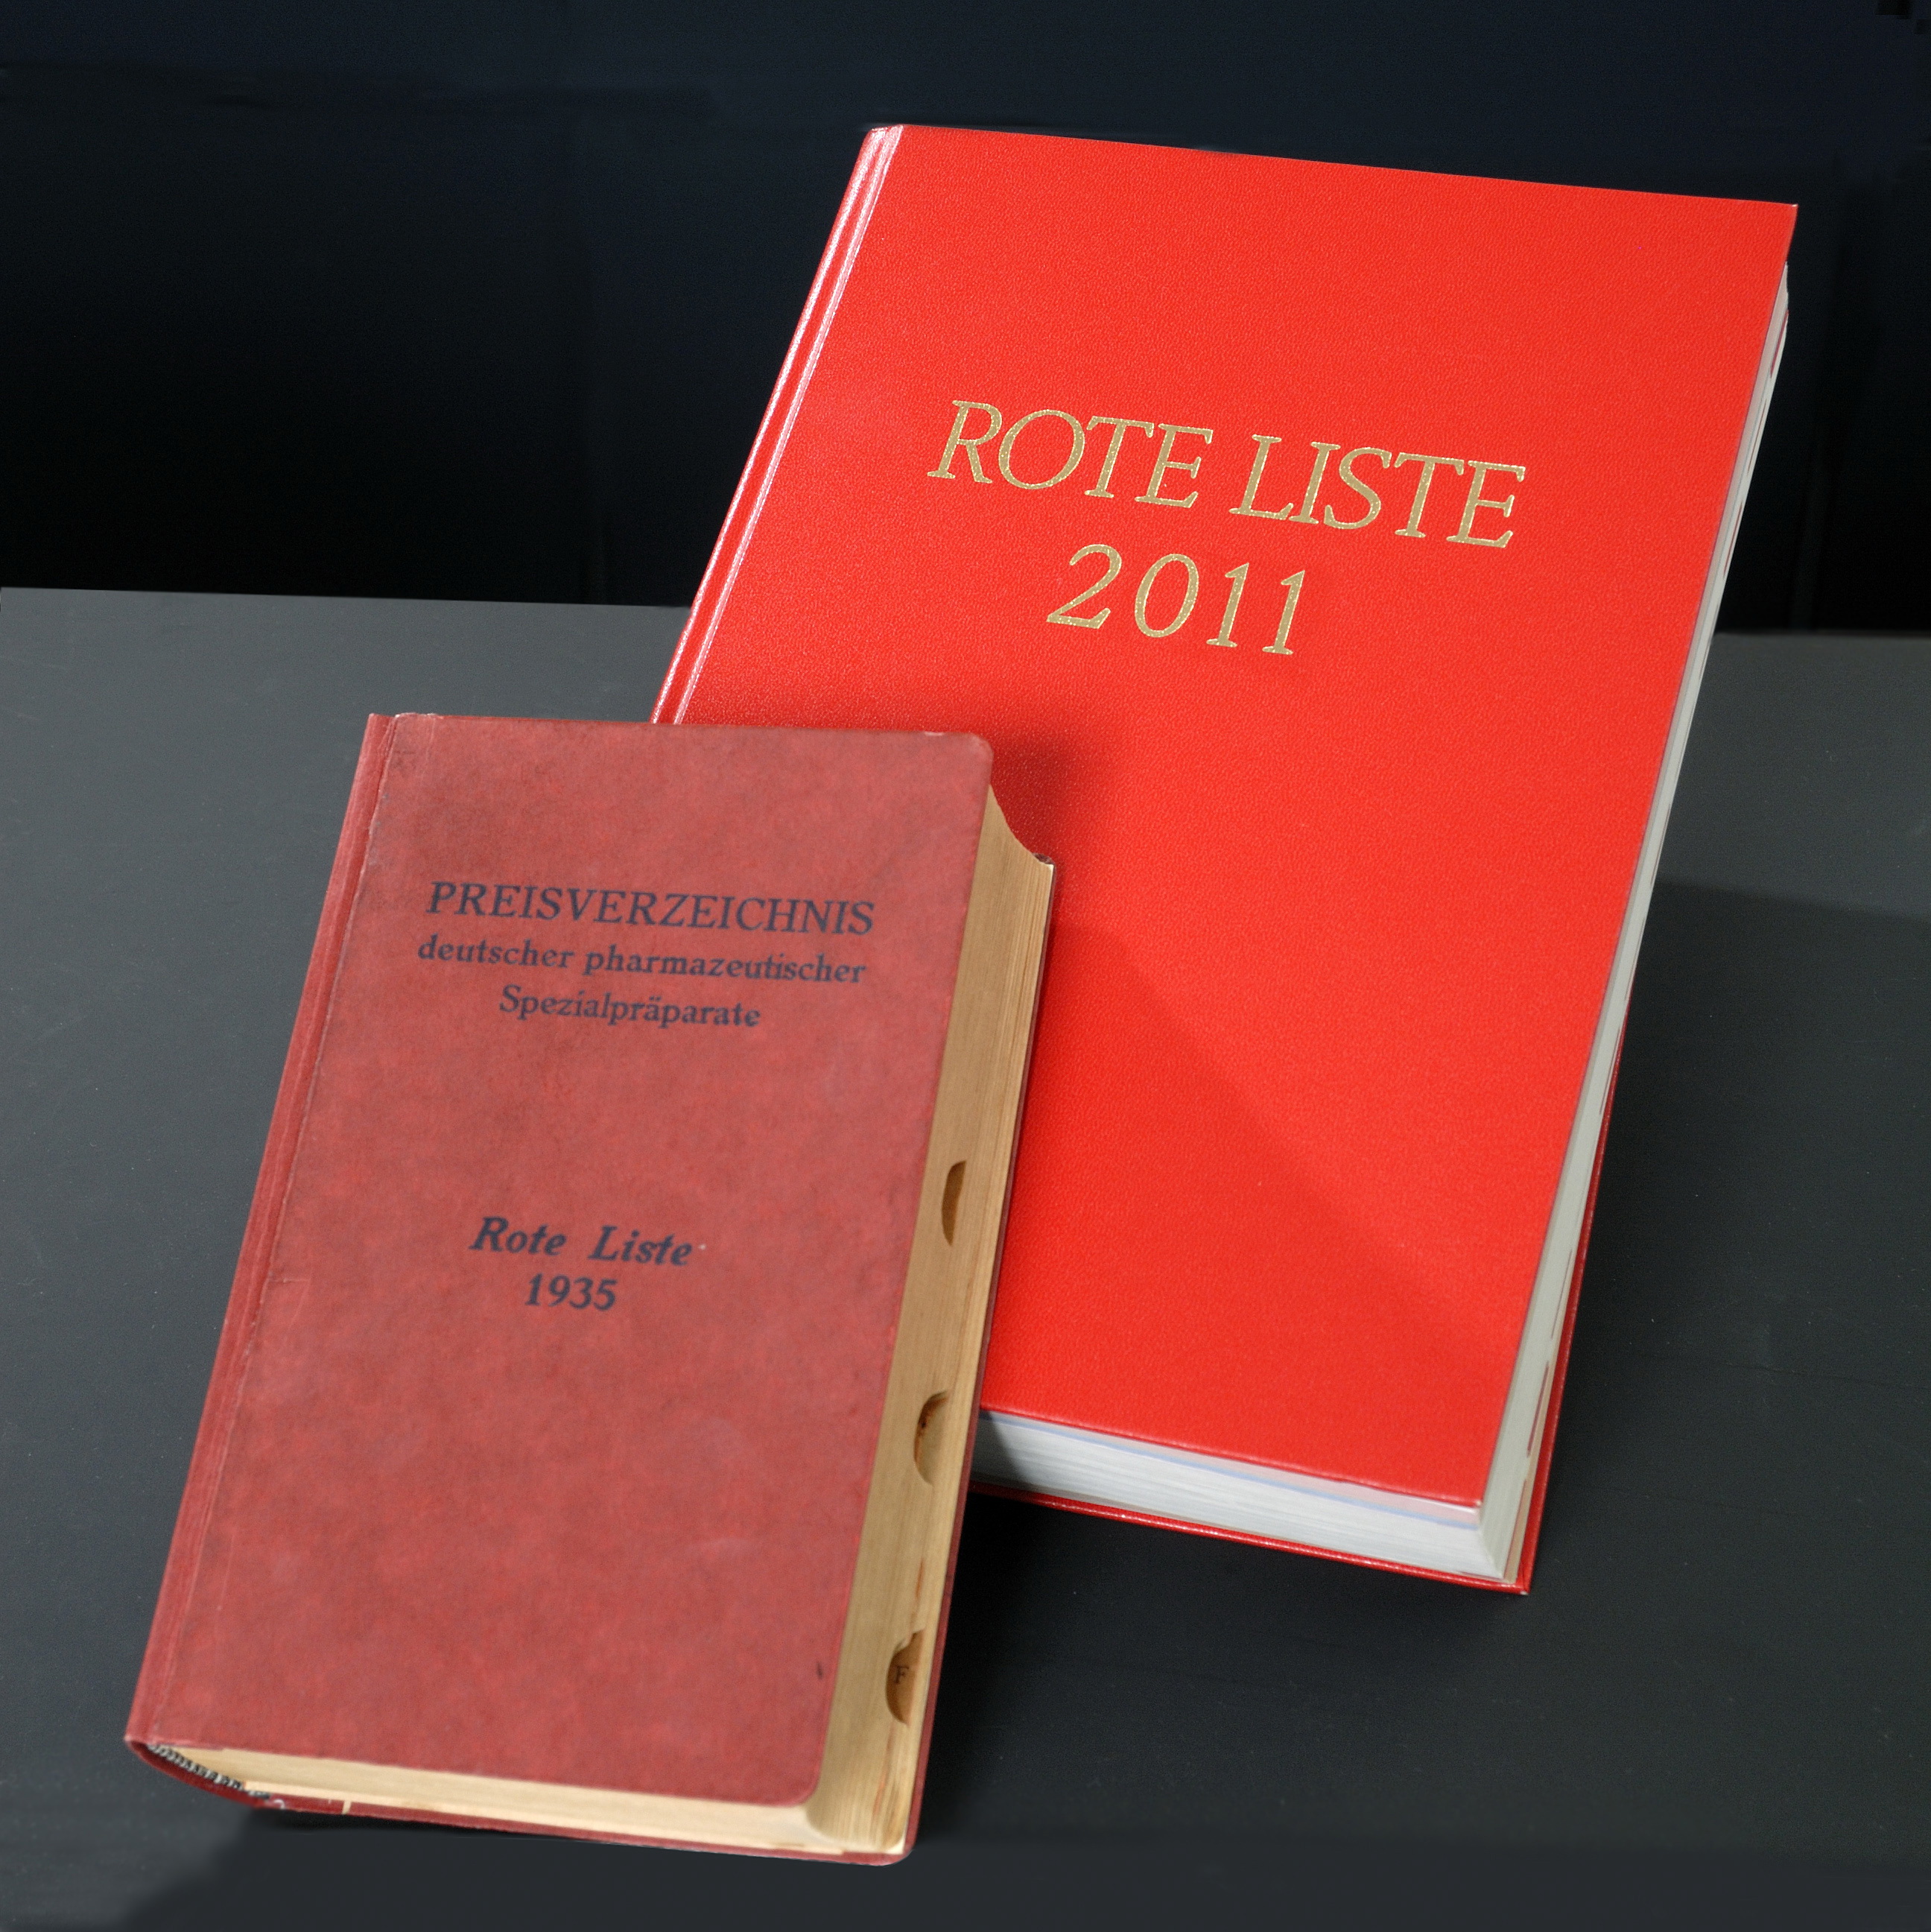 Rote Liste 2011